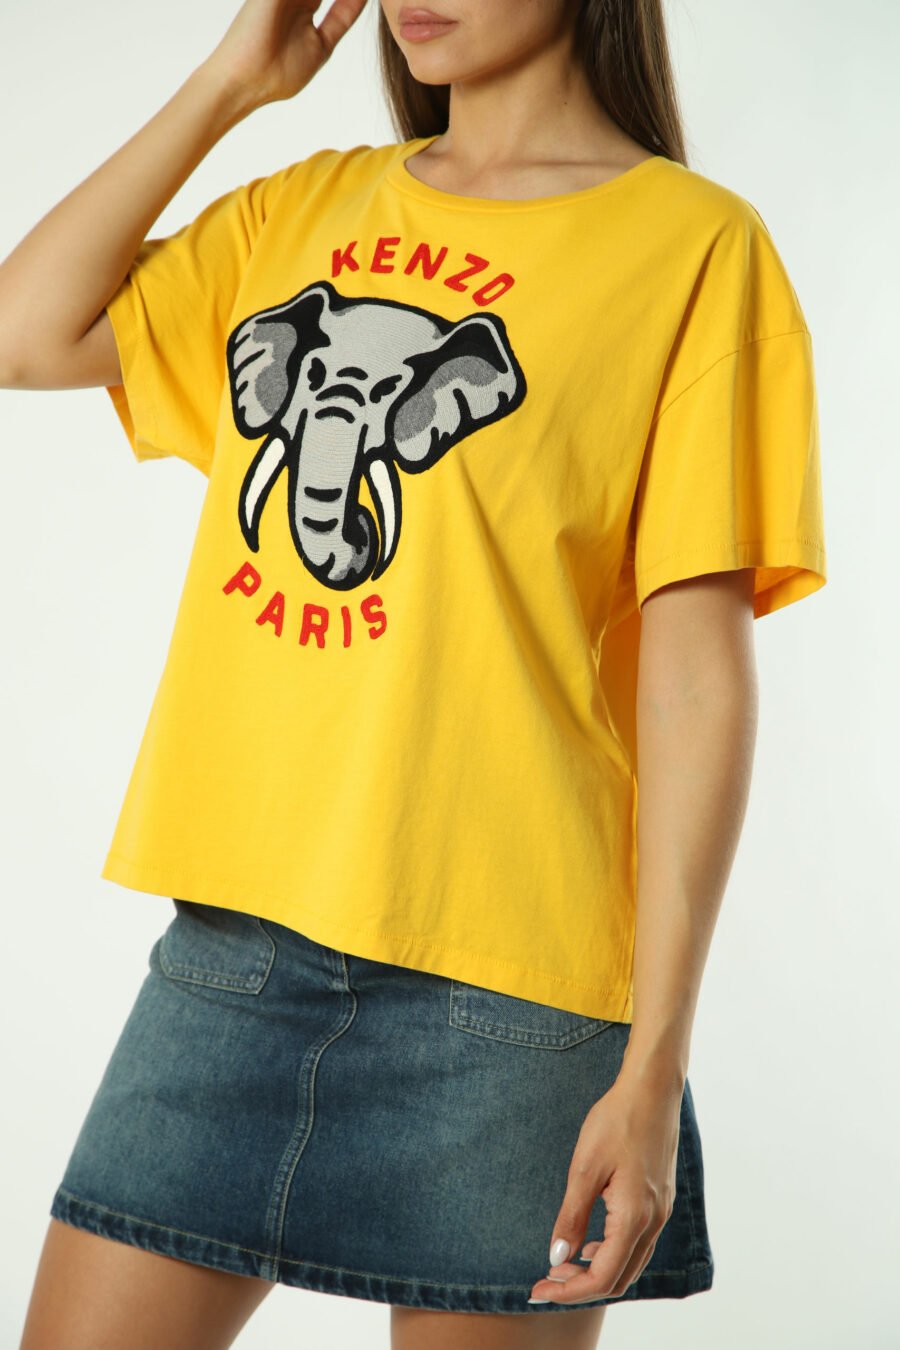 T-shirt amarela com maxilogo de elefante - Fotos 1310